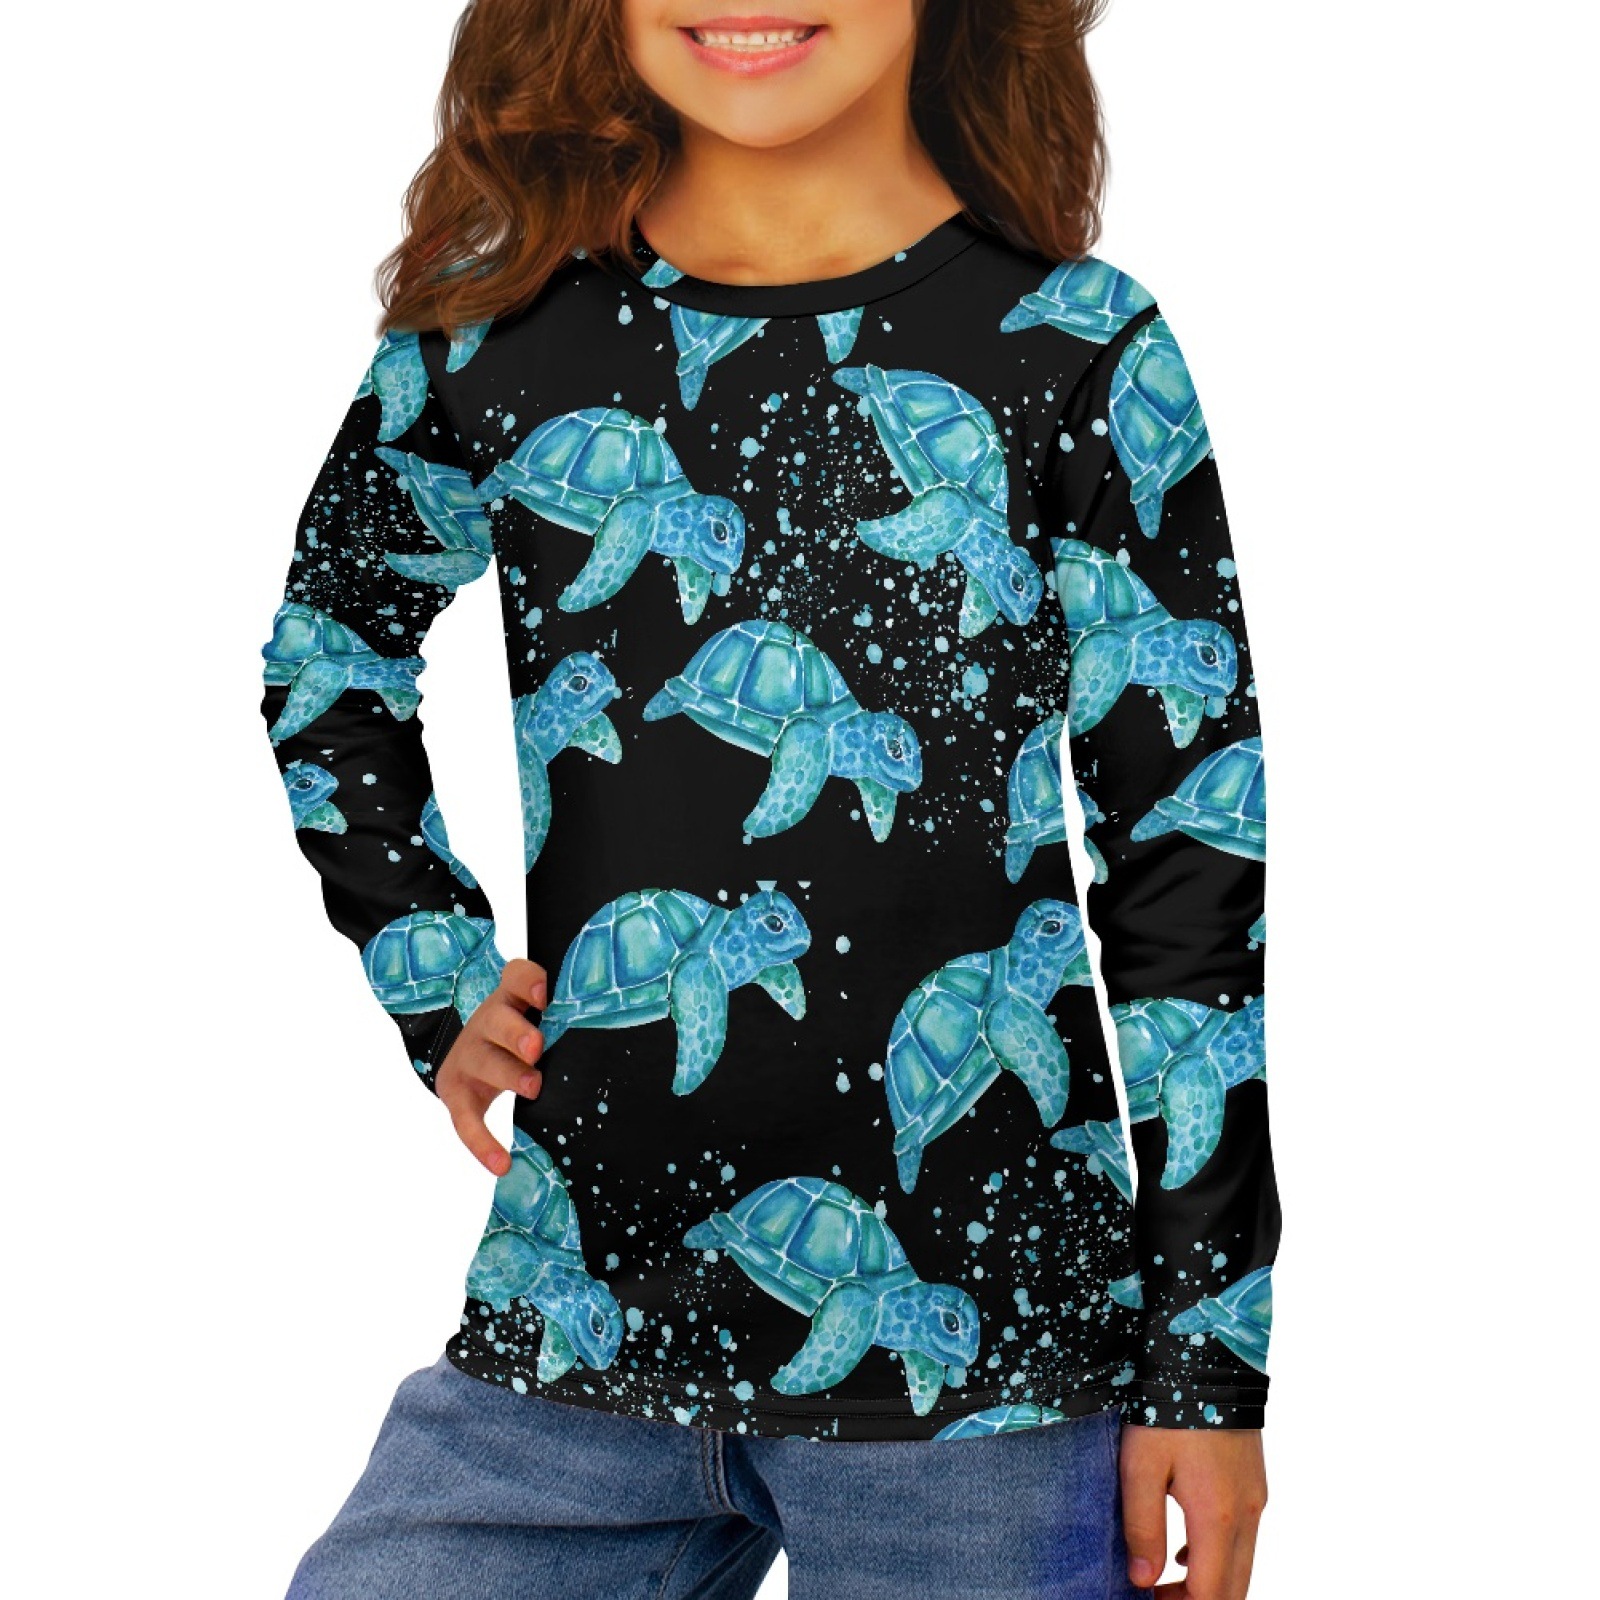 国际站海洋海龟图案3-16岁儿童涤纶T恤衫圆领套头长袖上衣来图印